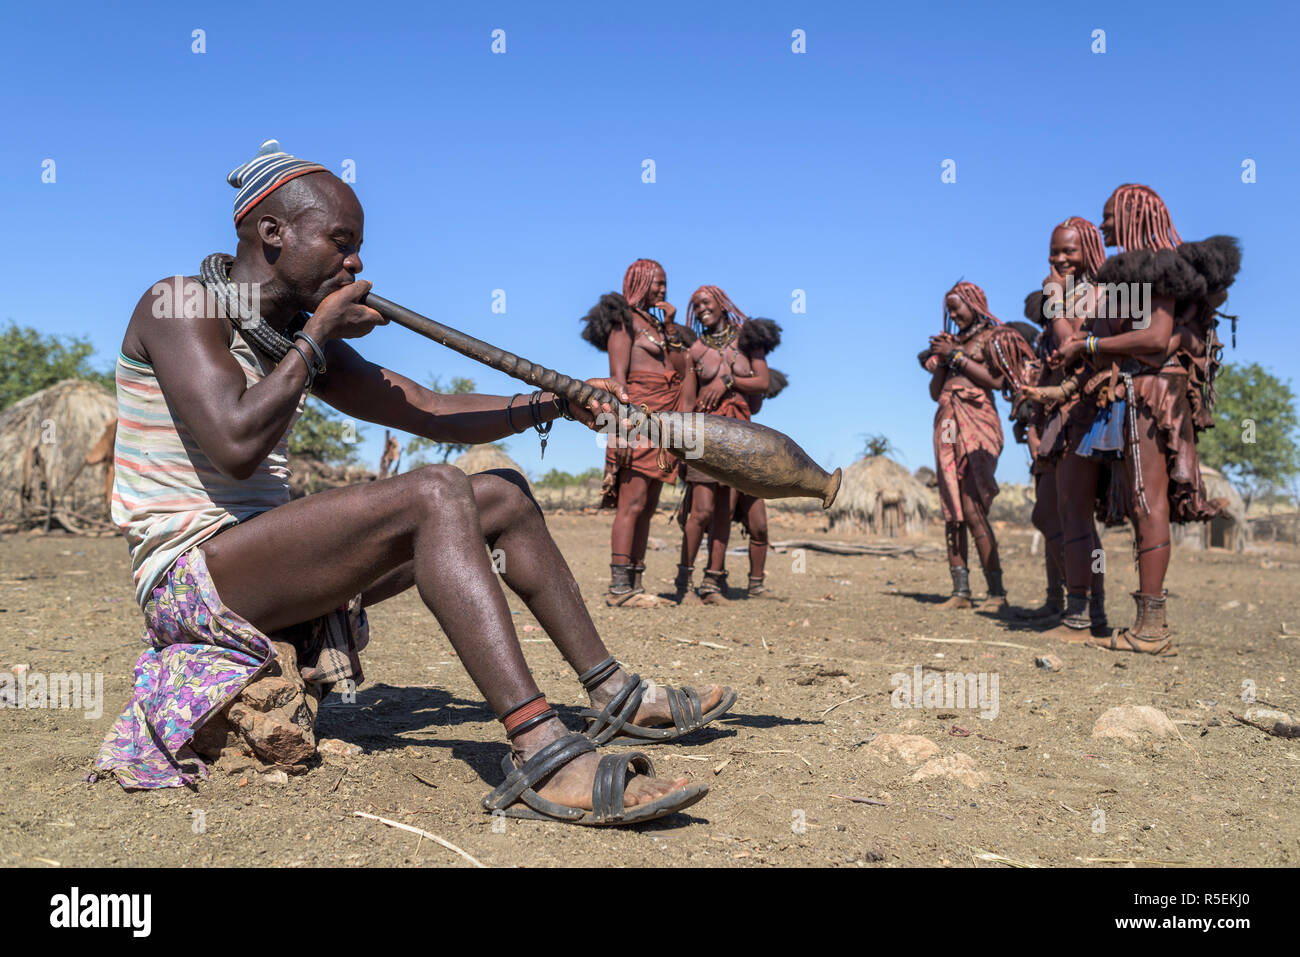 Groupe des femmes Himba avec costumes traditionnels de danser dans un cercle alors qu'un homme joue un violon fabriqué à partir d'une corne orix. Banque D'Images